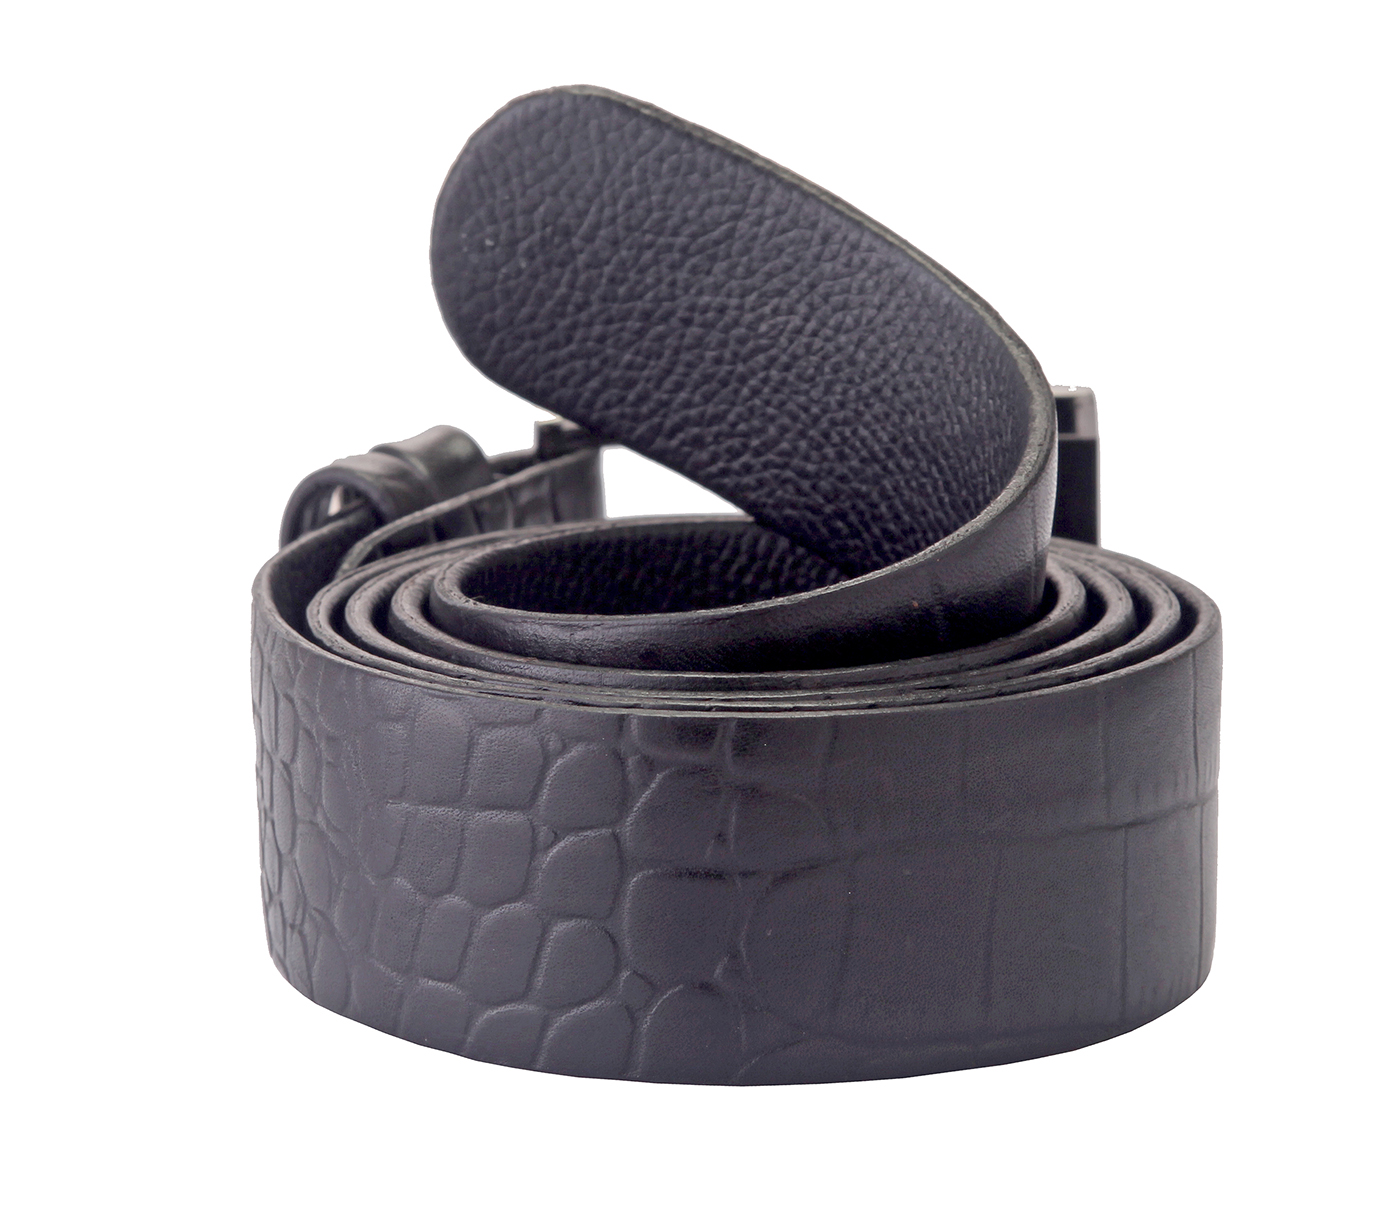 Belt--Men's Formal wear belt in Genuine Leather - Black